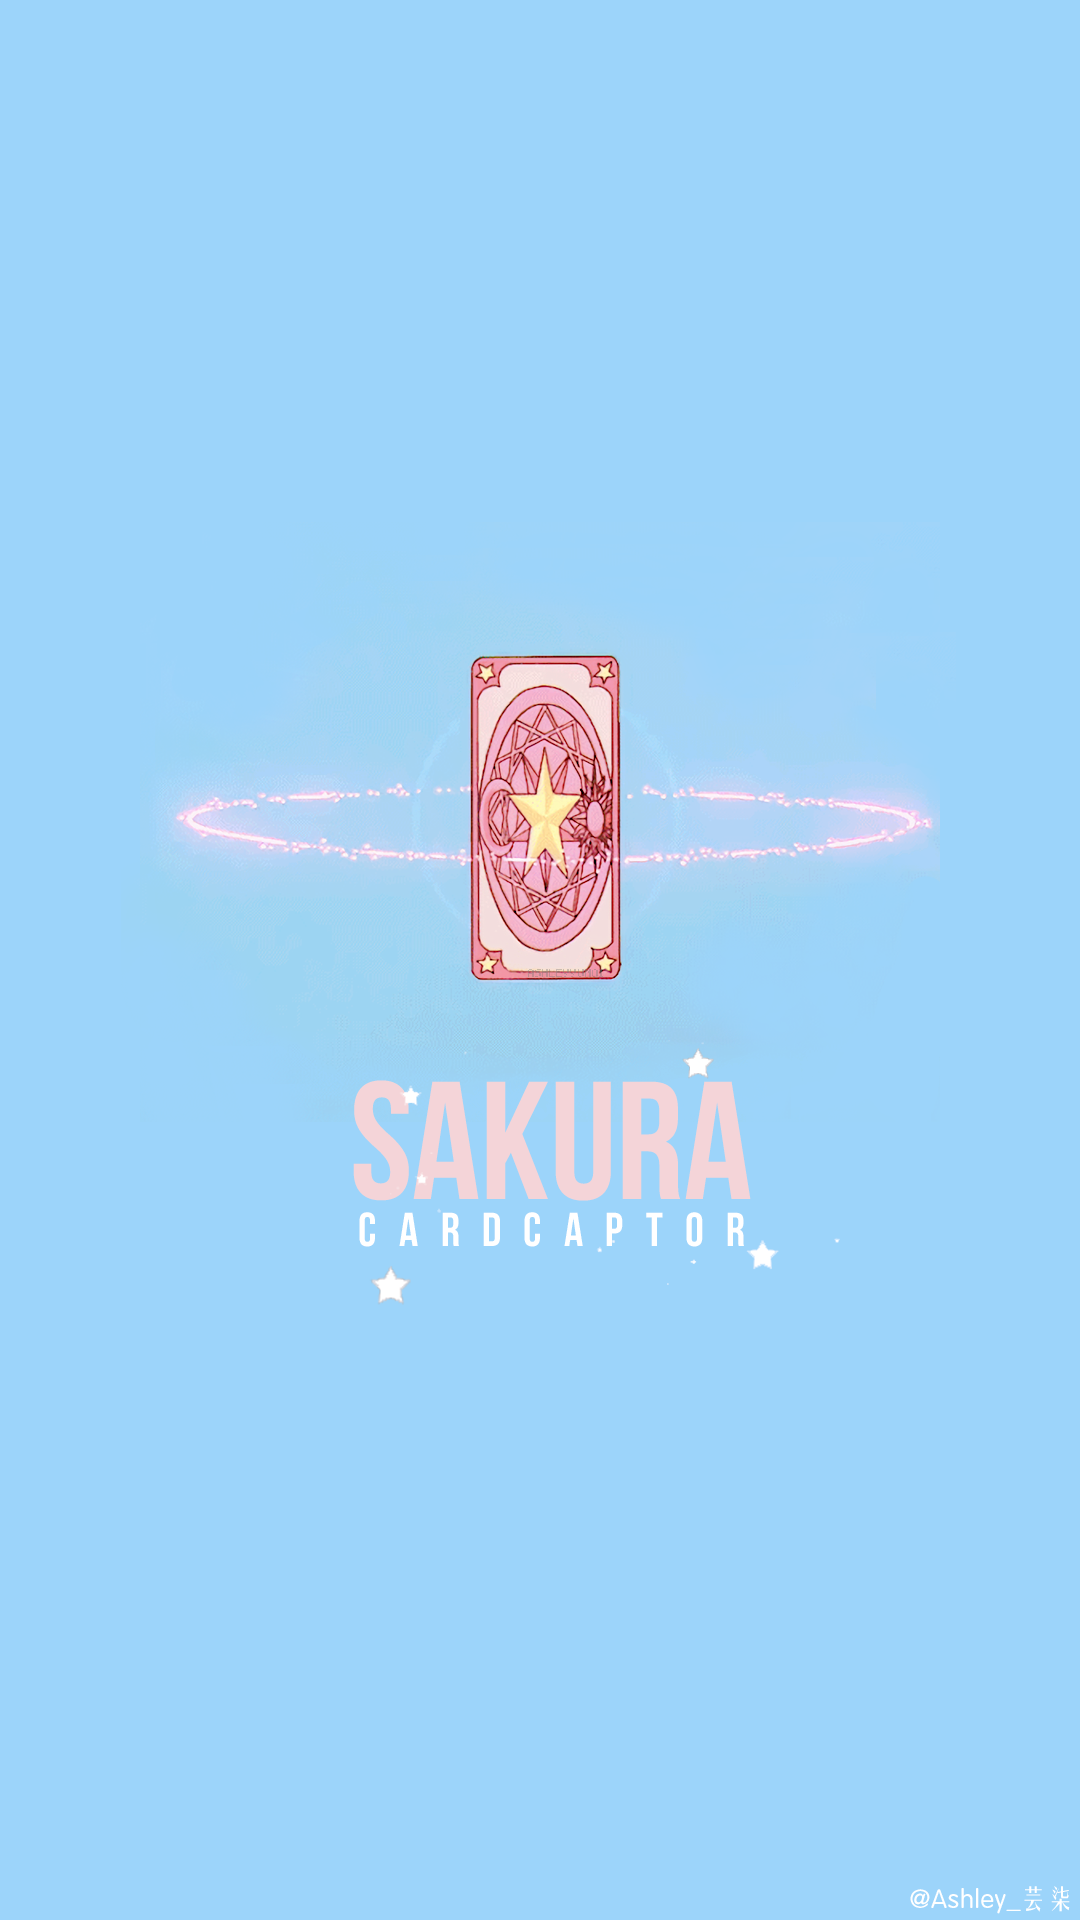 Cardcaptor Sakura Iphone Wallpapers